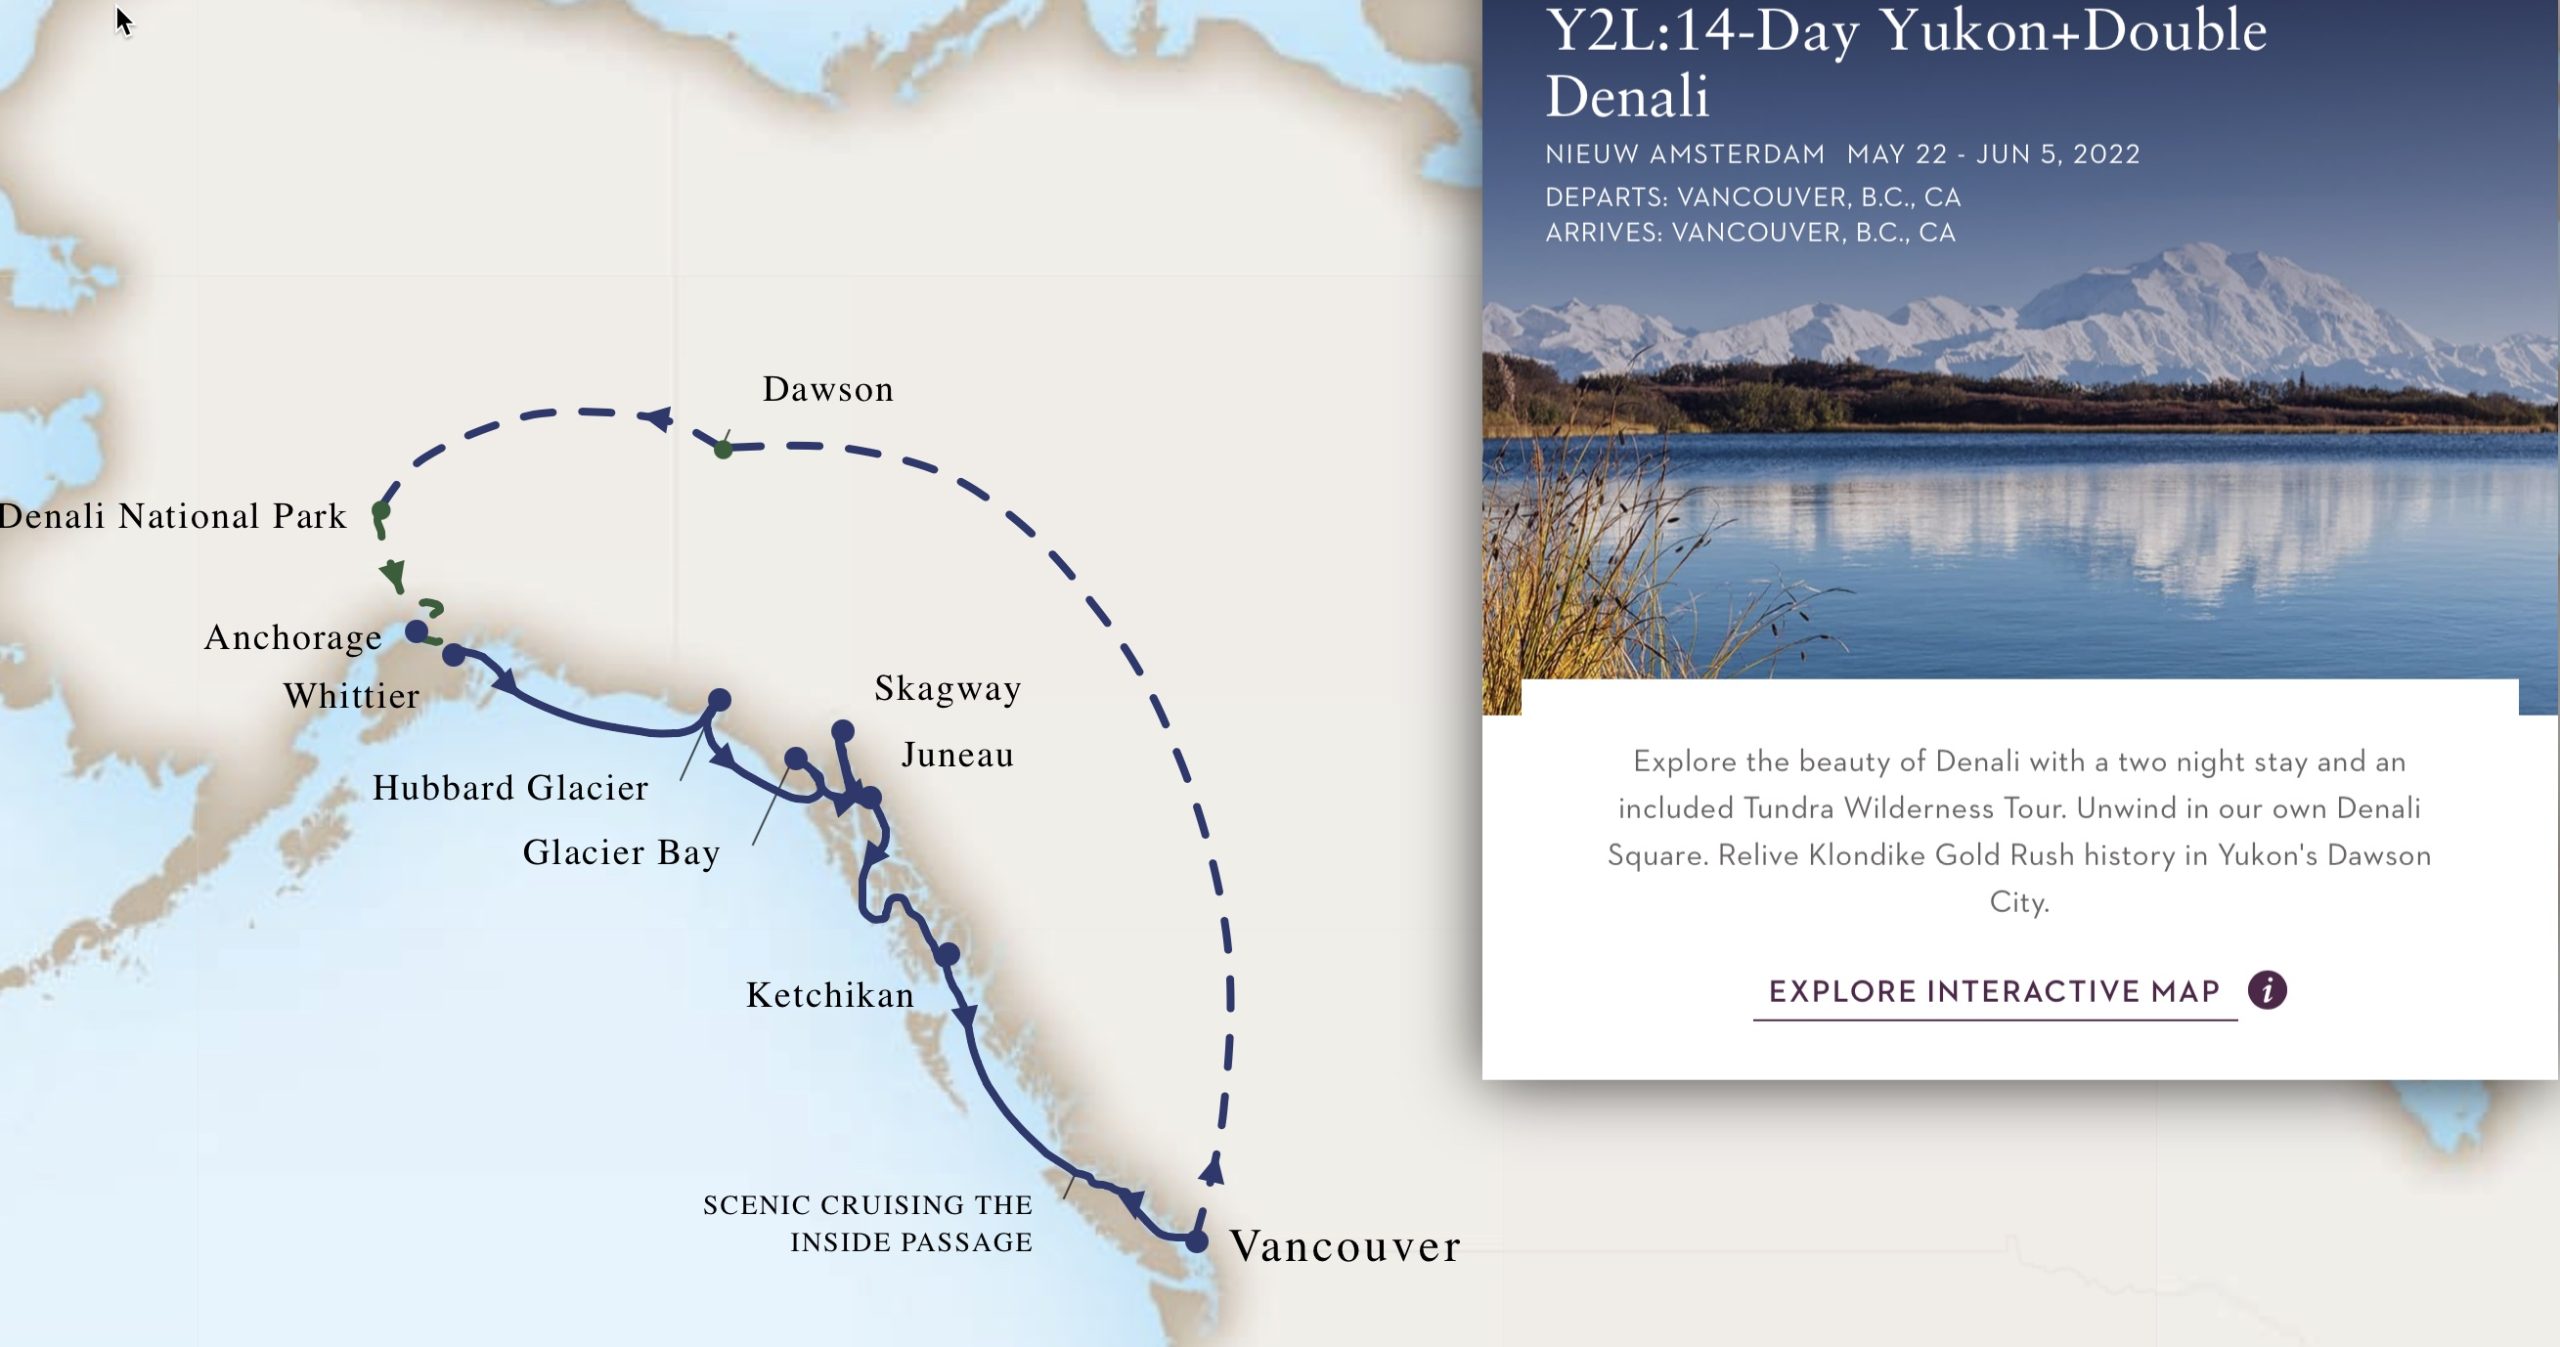 14-Day Yukon & Double Denali Alaska cruise map